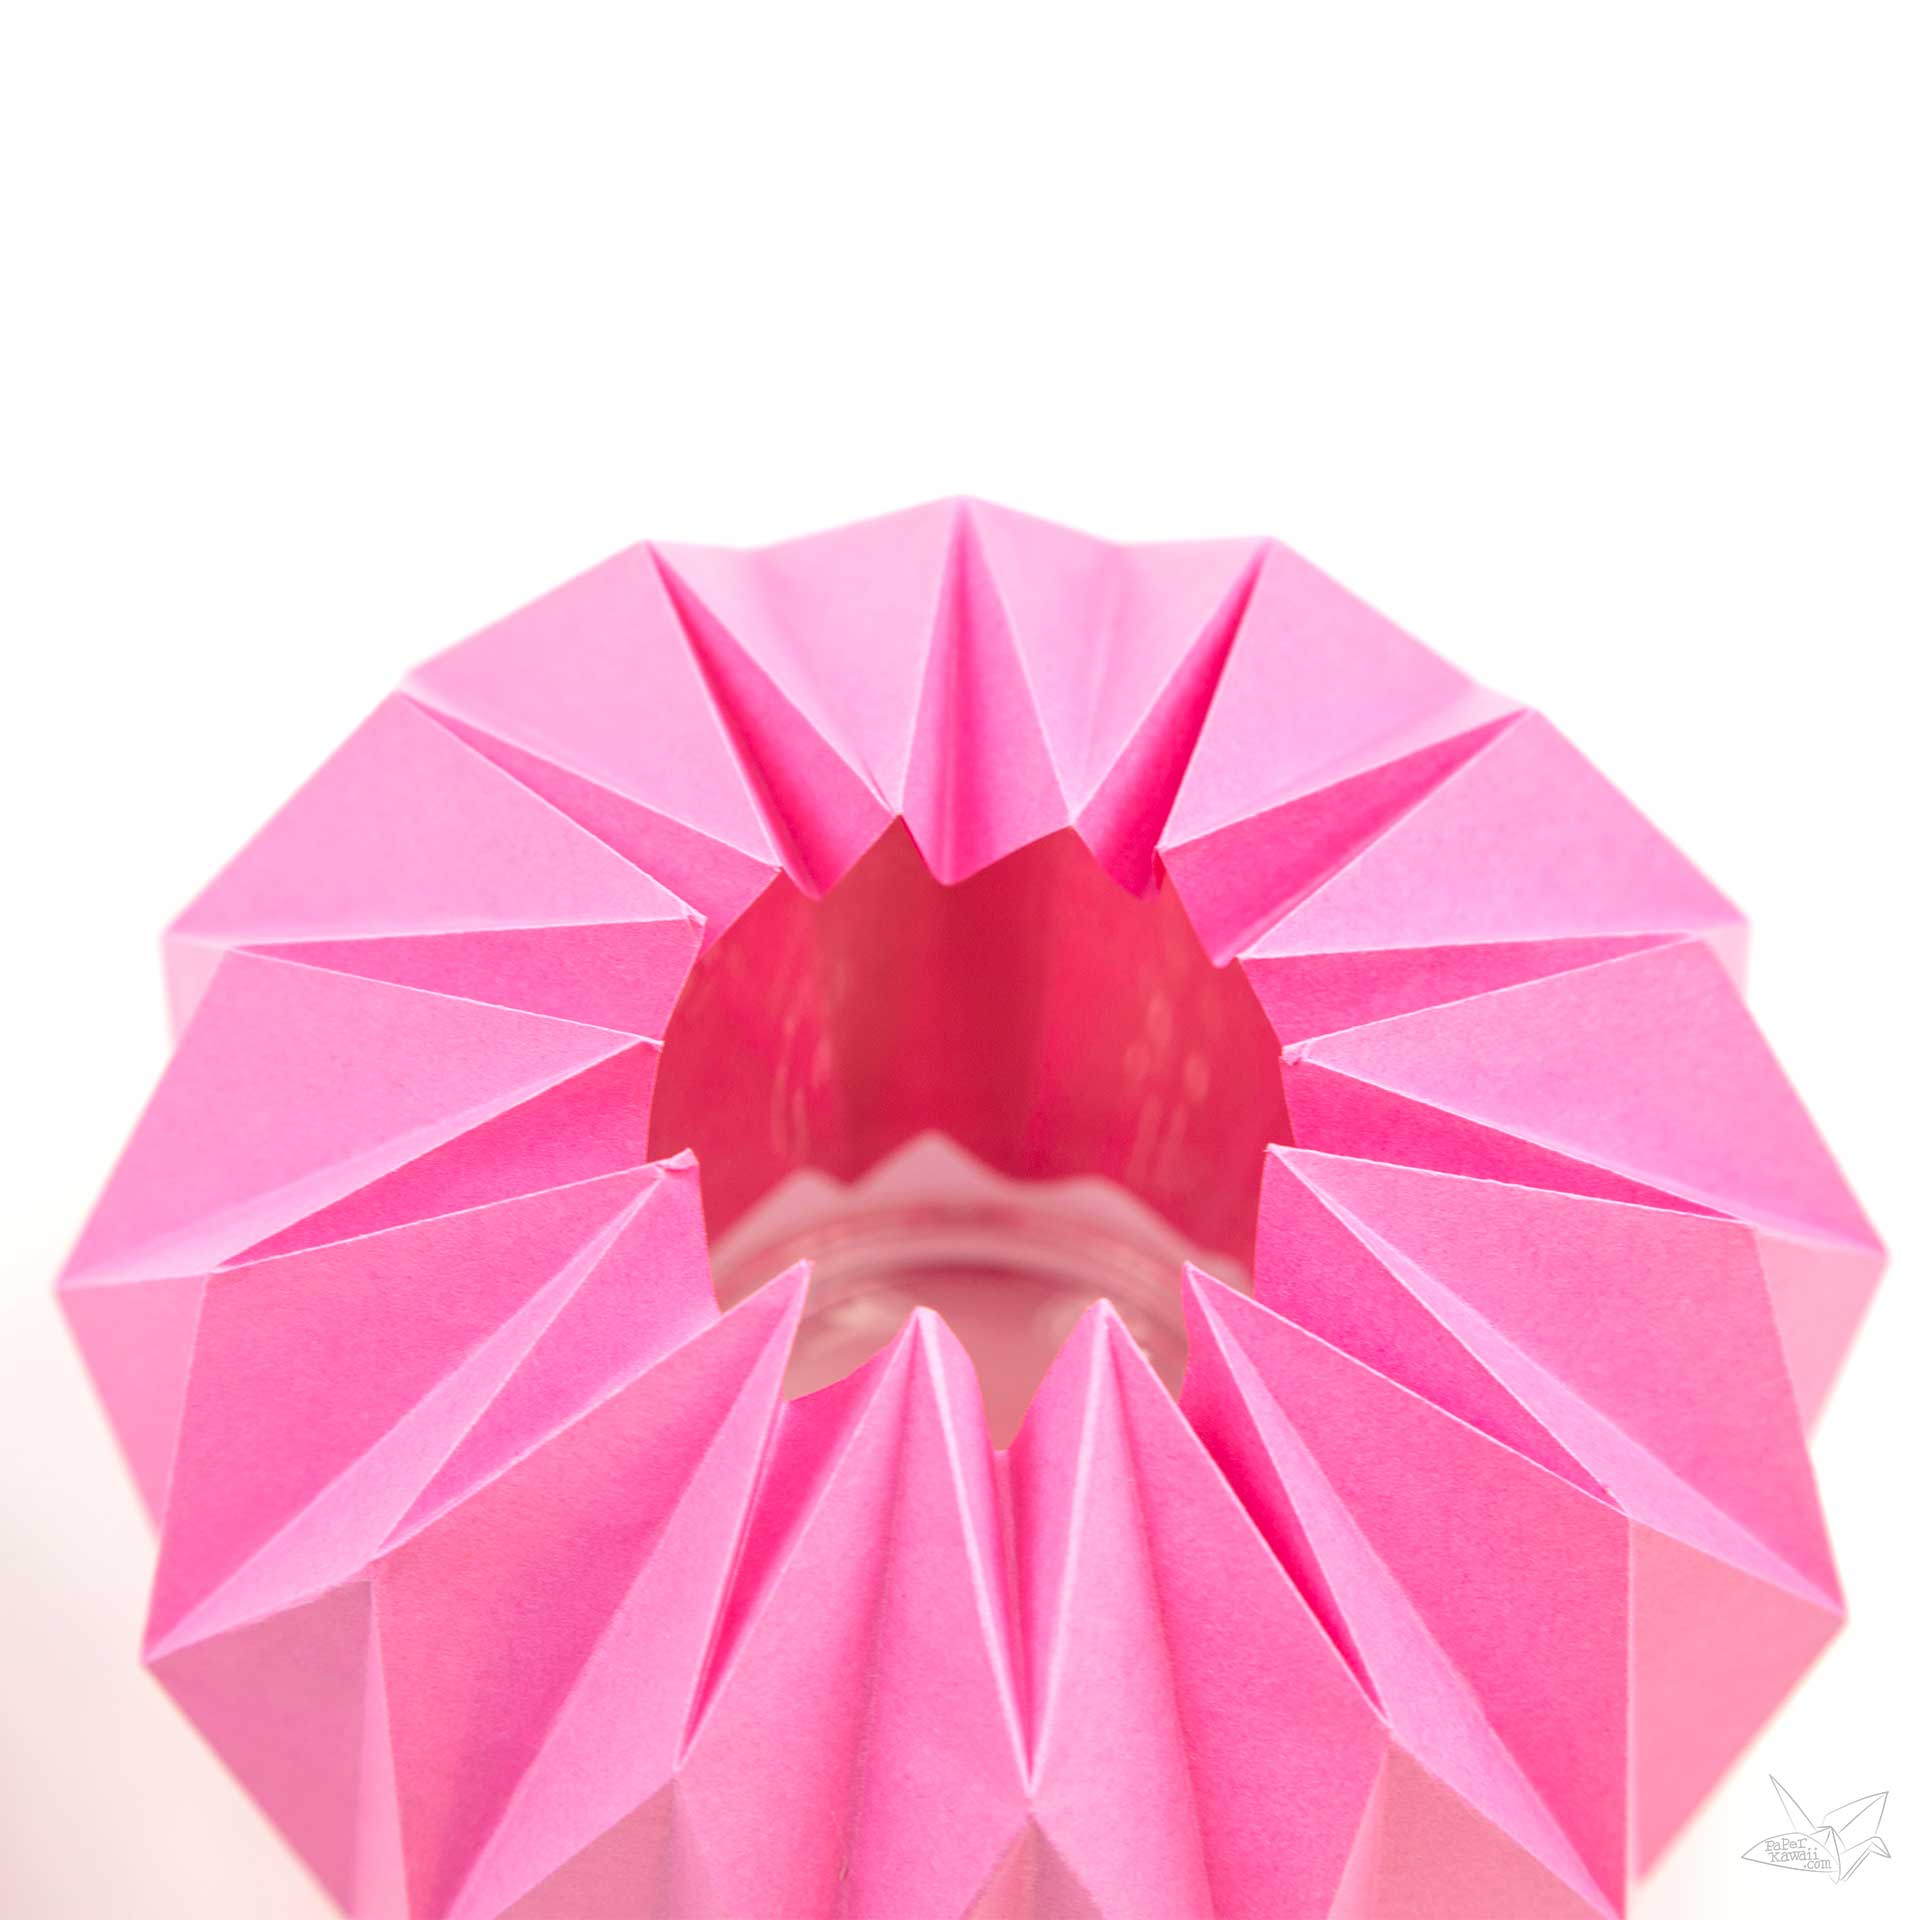 Origami Vase Cover Tutorial - Accordion Origami